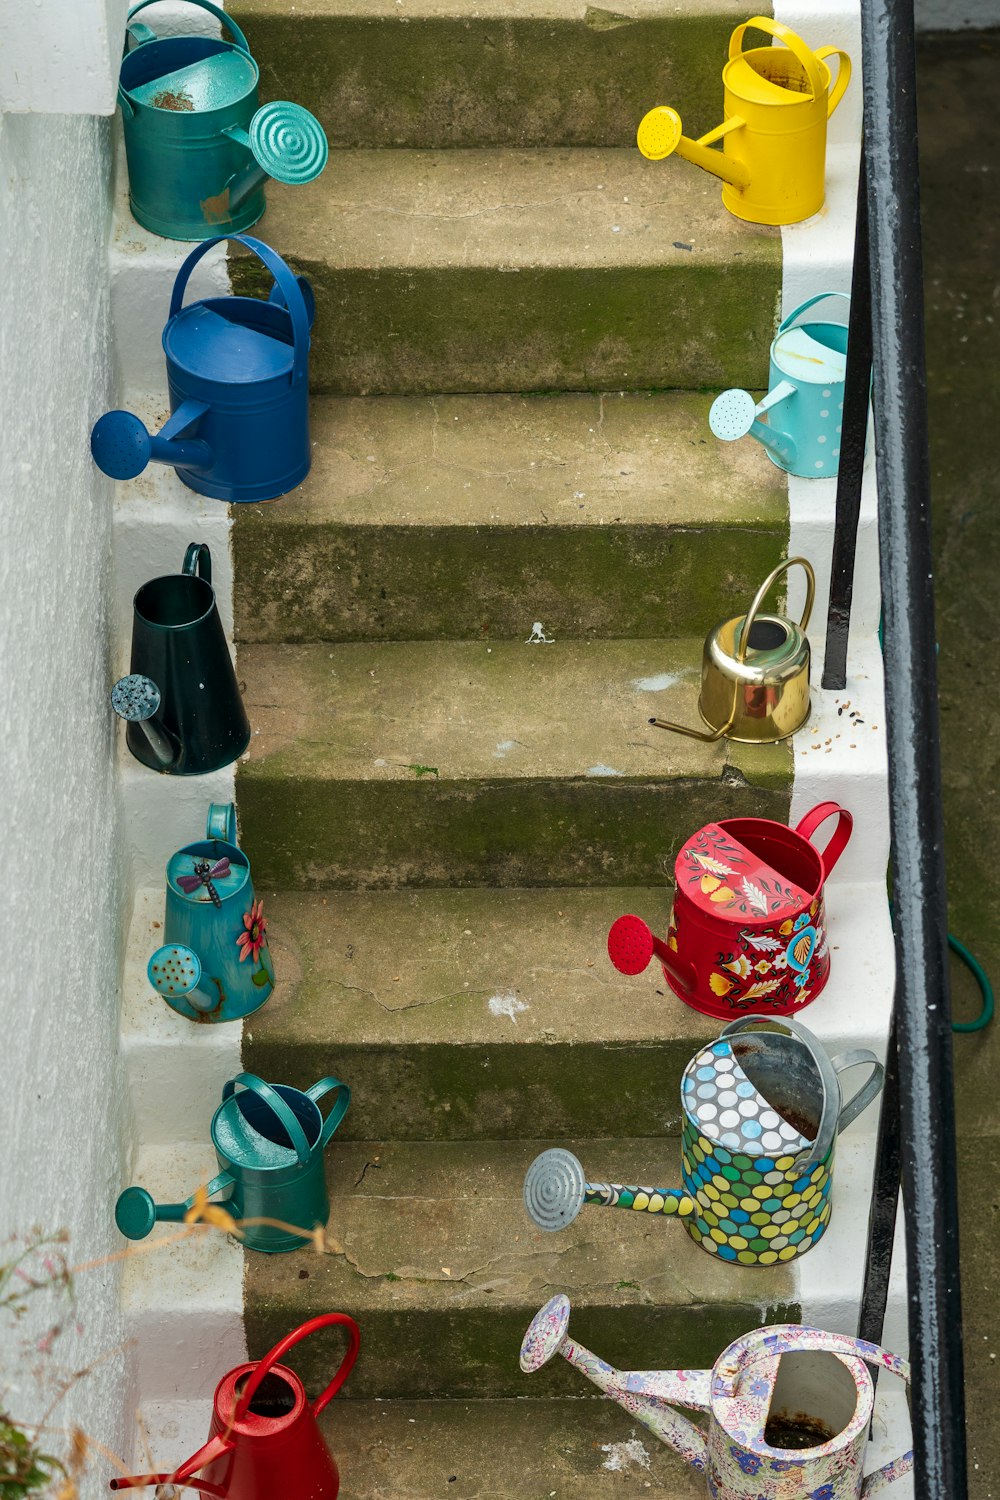 balde de plástico azul nas escadas de concreto cinza